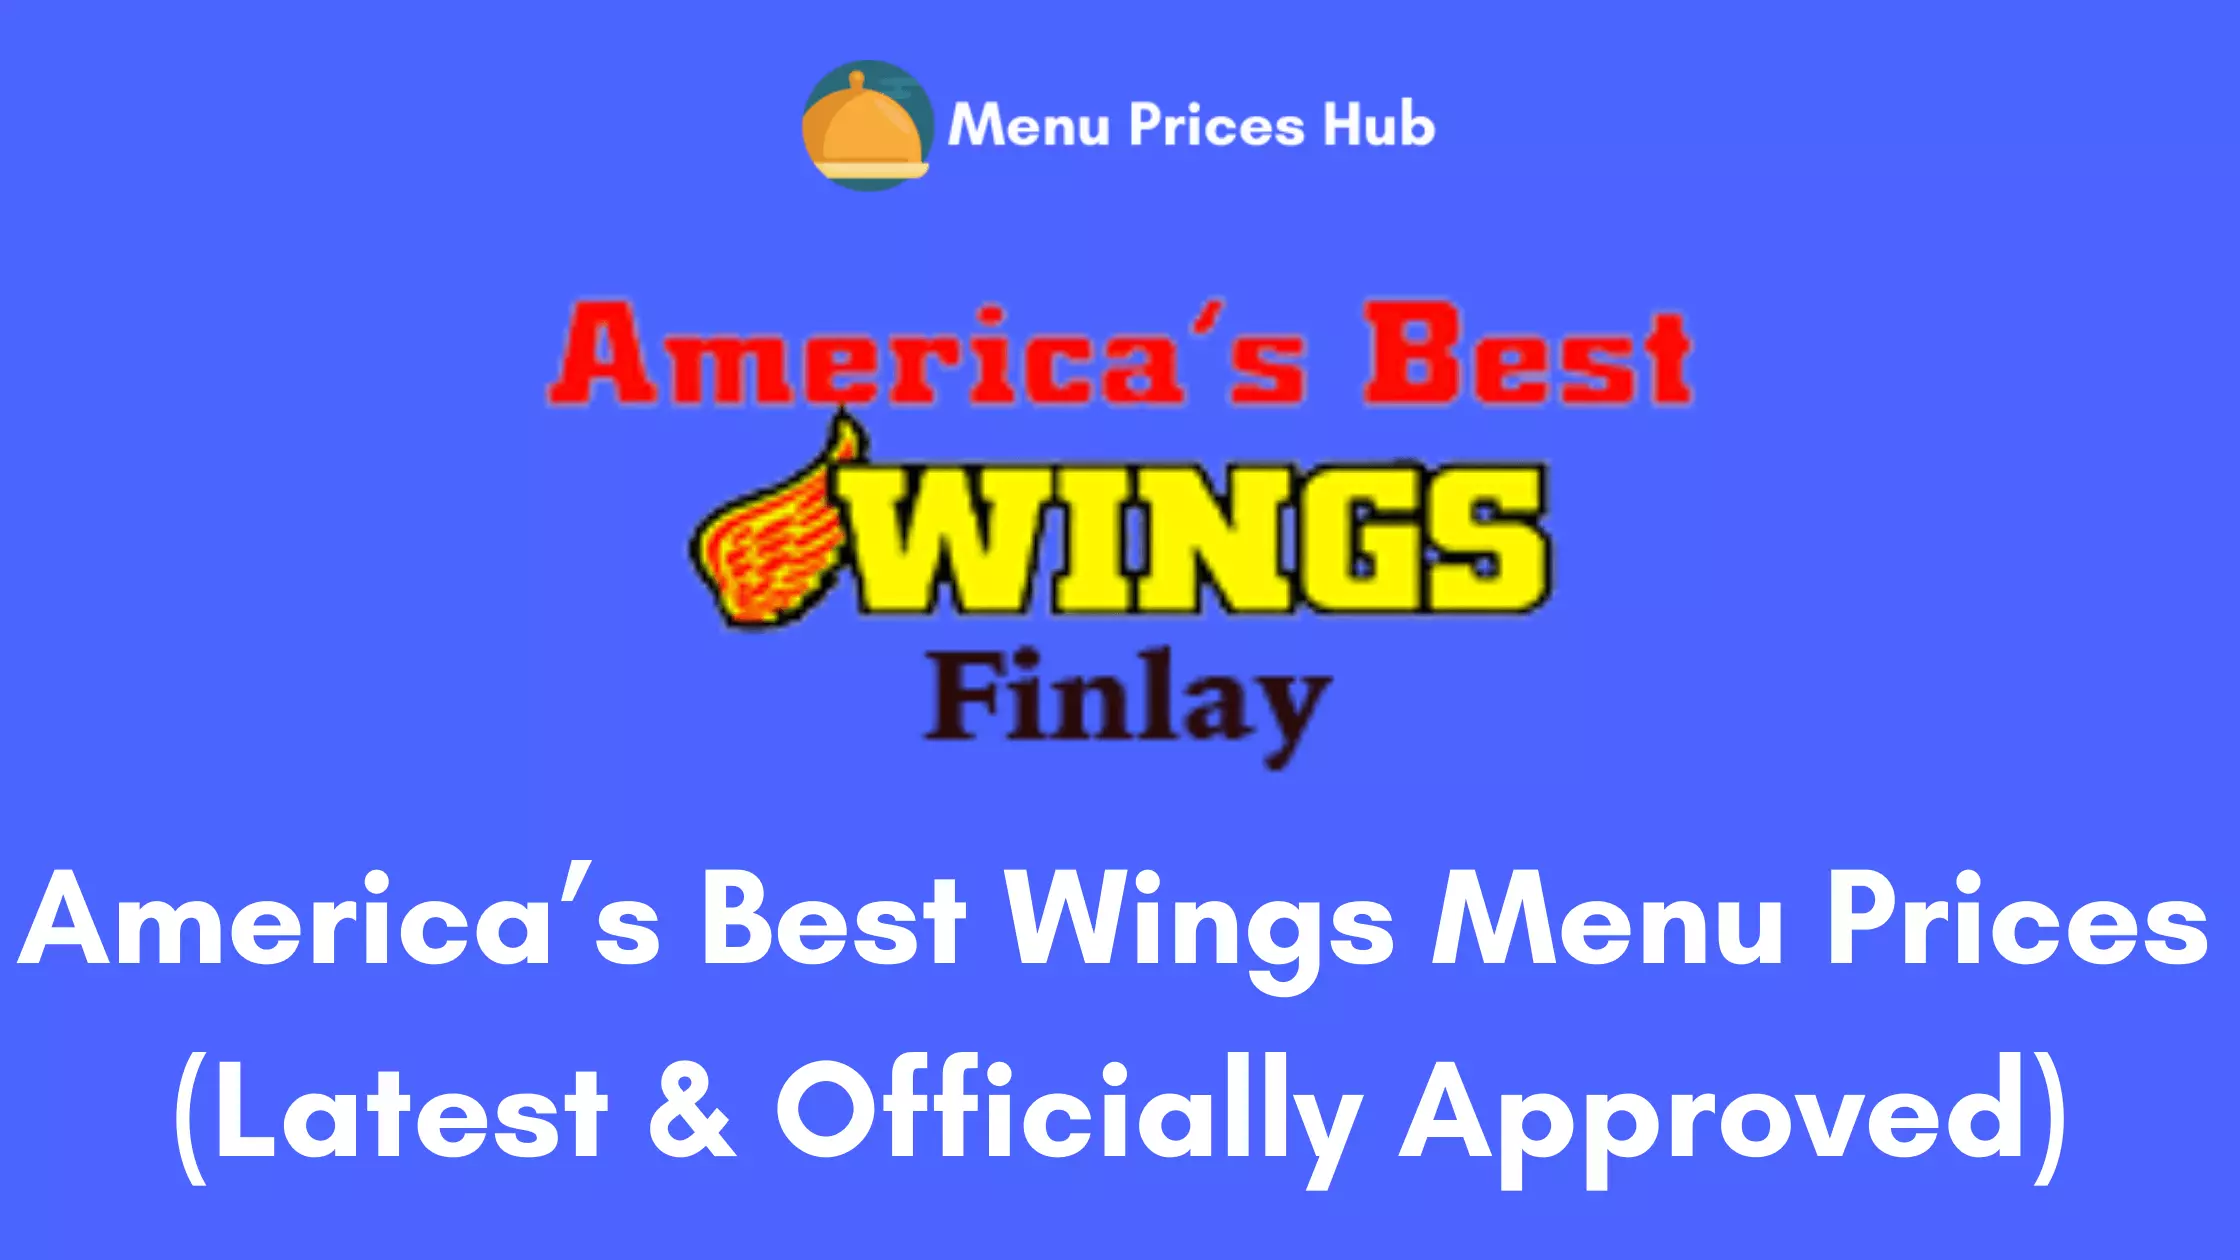 America’s Best Wings Menu Prices